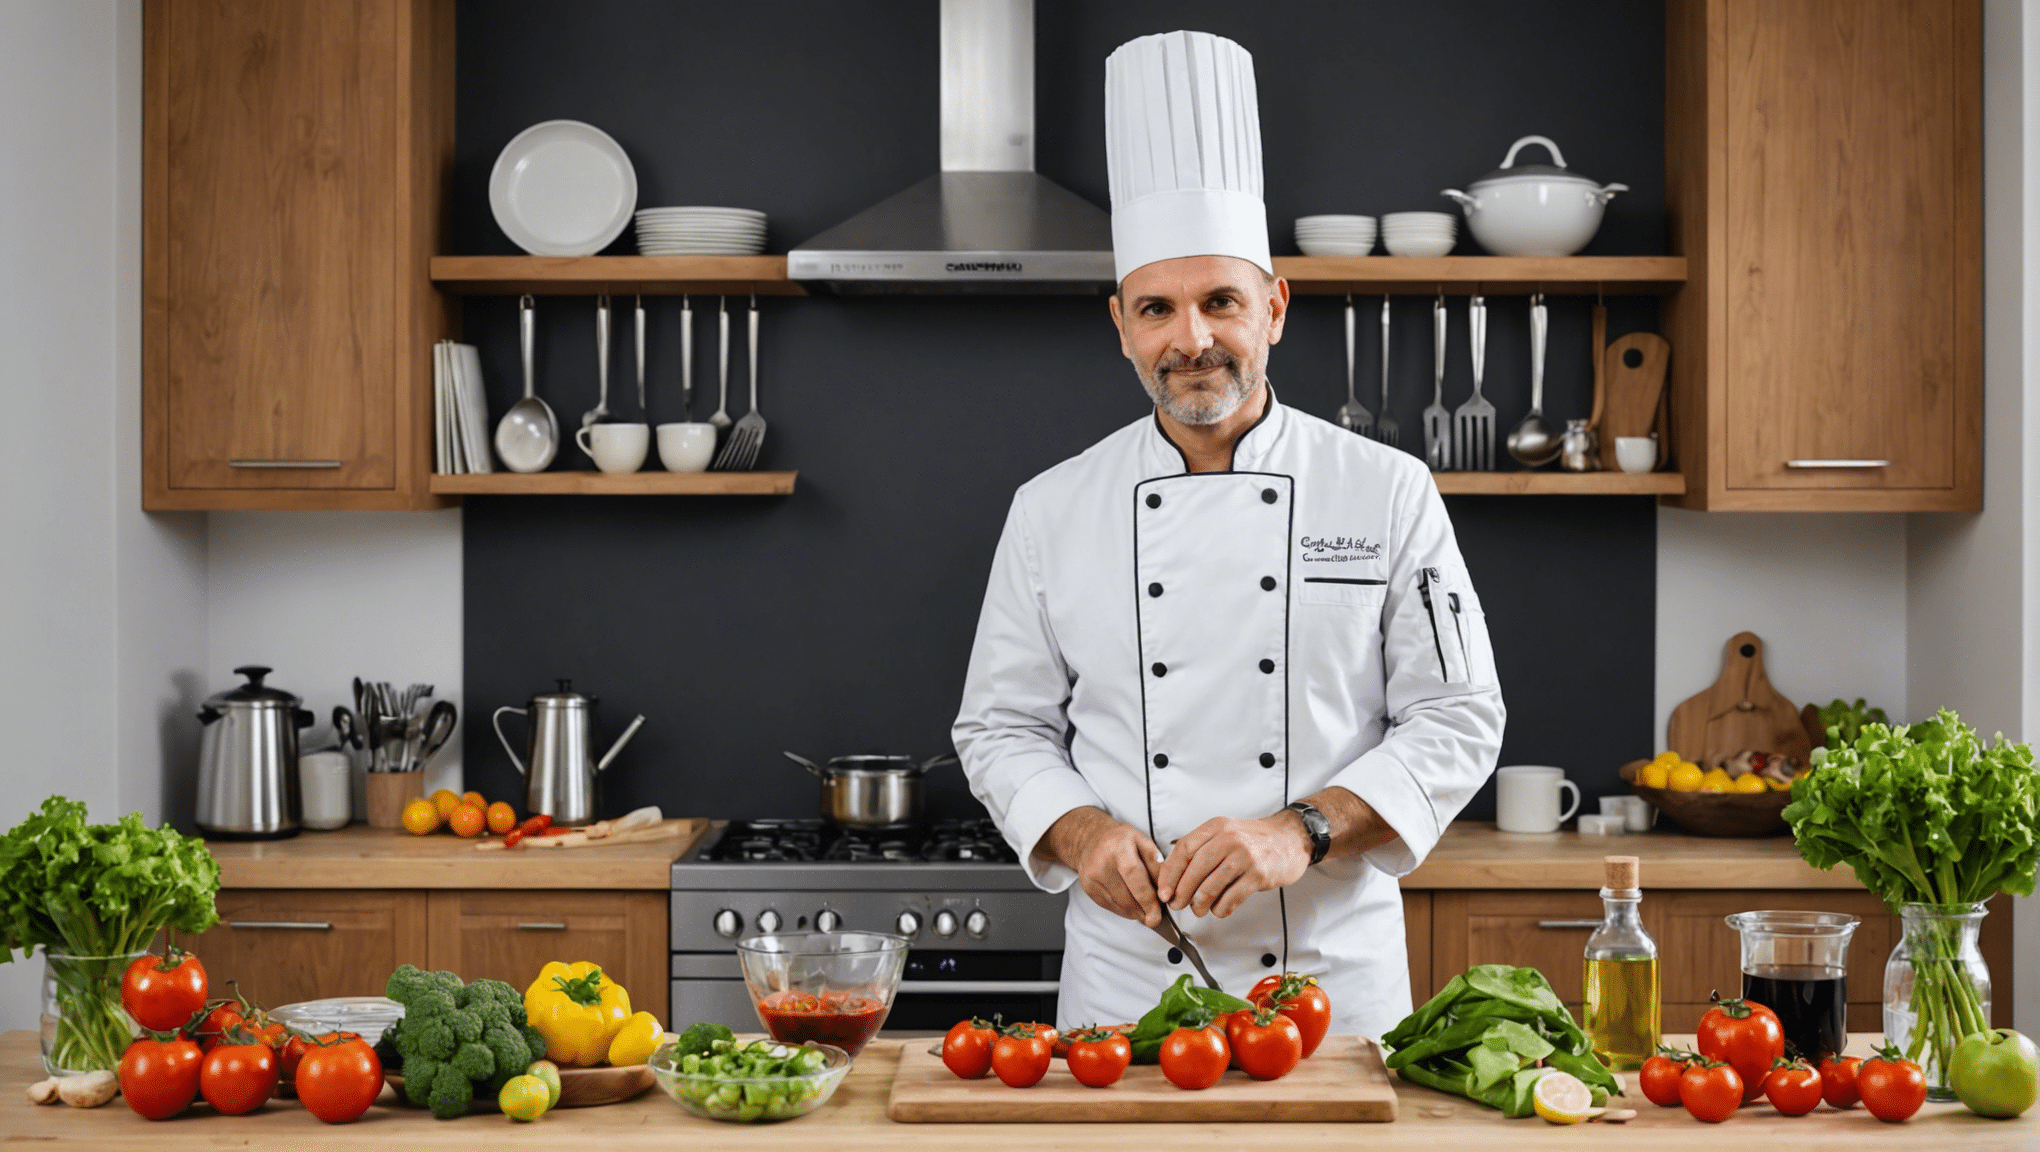 découvrez comment les chefs conservent leurs meilleures astuces de cuisine pour les utiliser à la maison. des conseils pratiques pour améliorer vos compétences culinaires vous attendent.